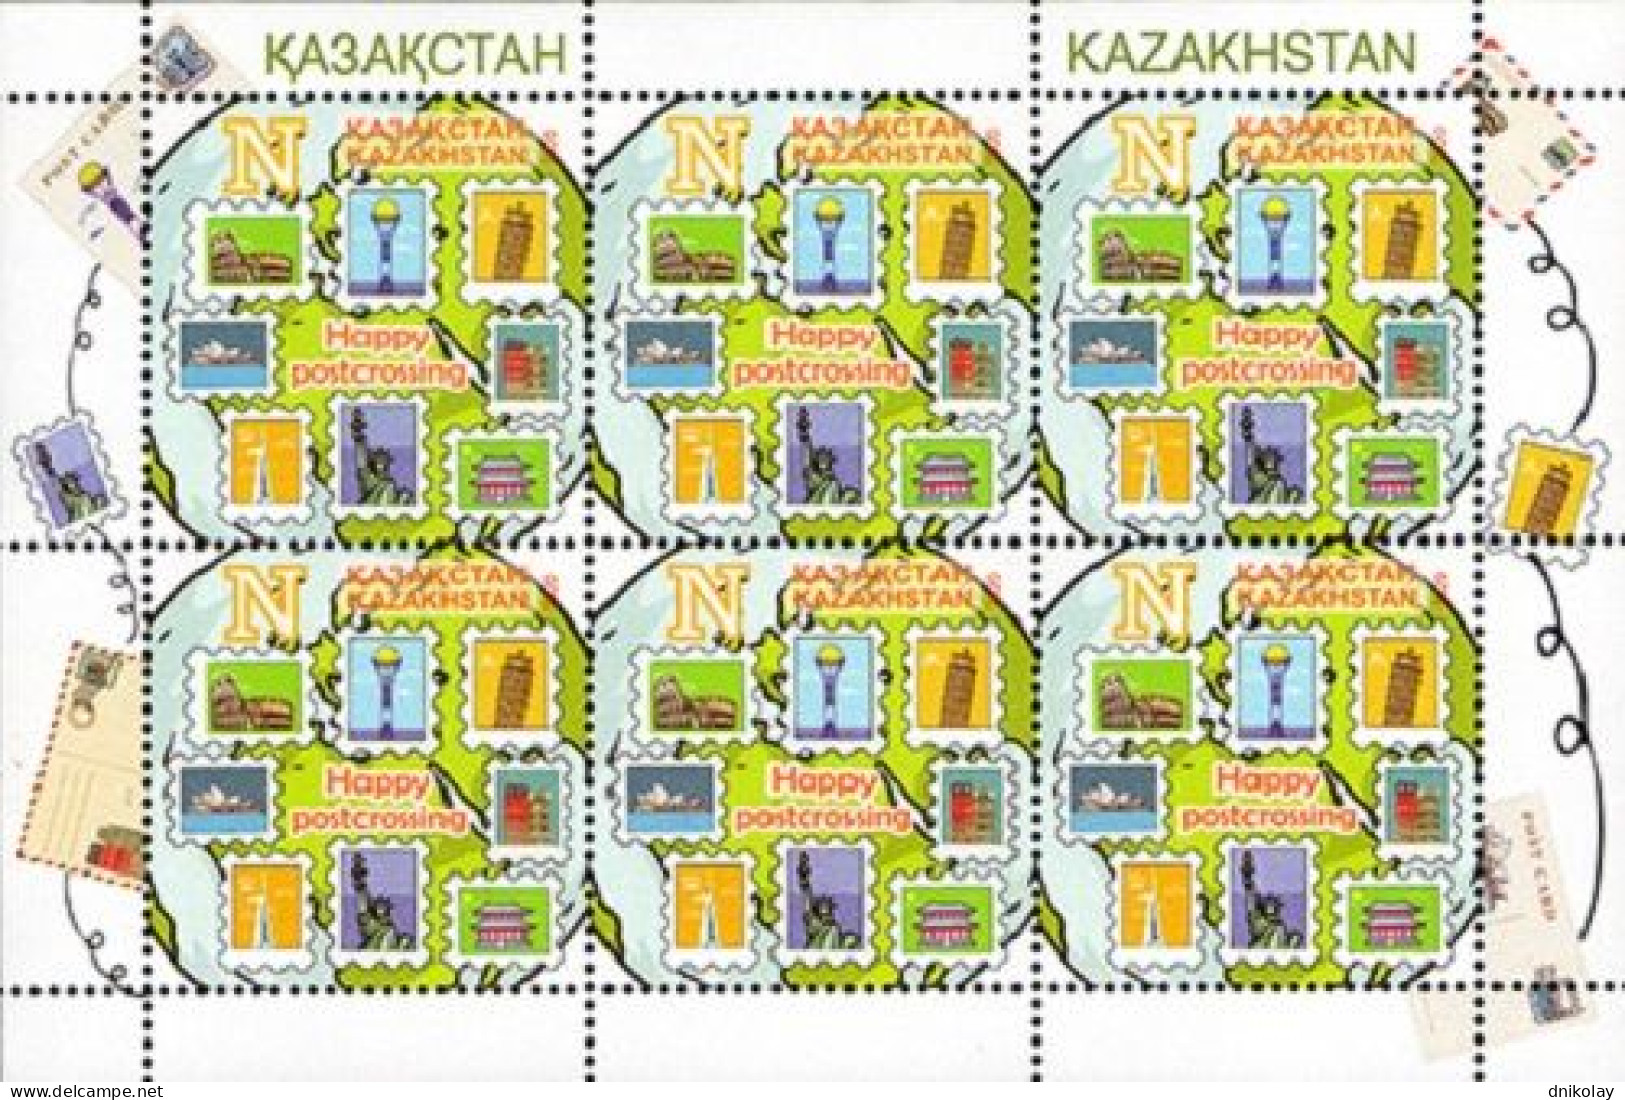 2020 1233 Kazakhstan Happy Postcrossing MNH - Kazachstan